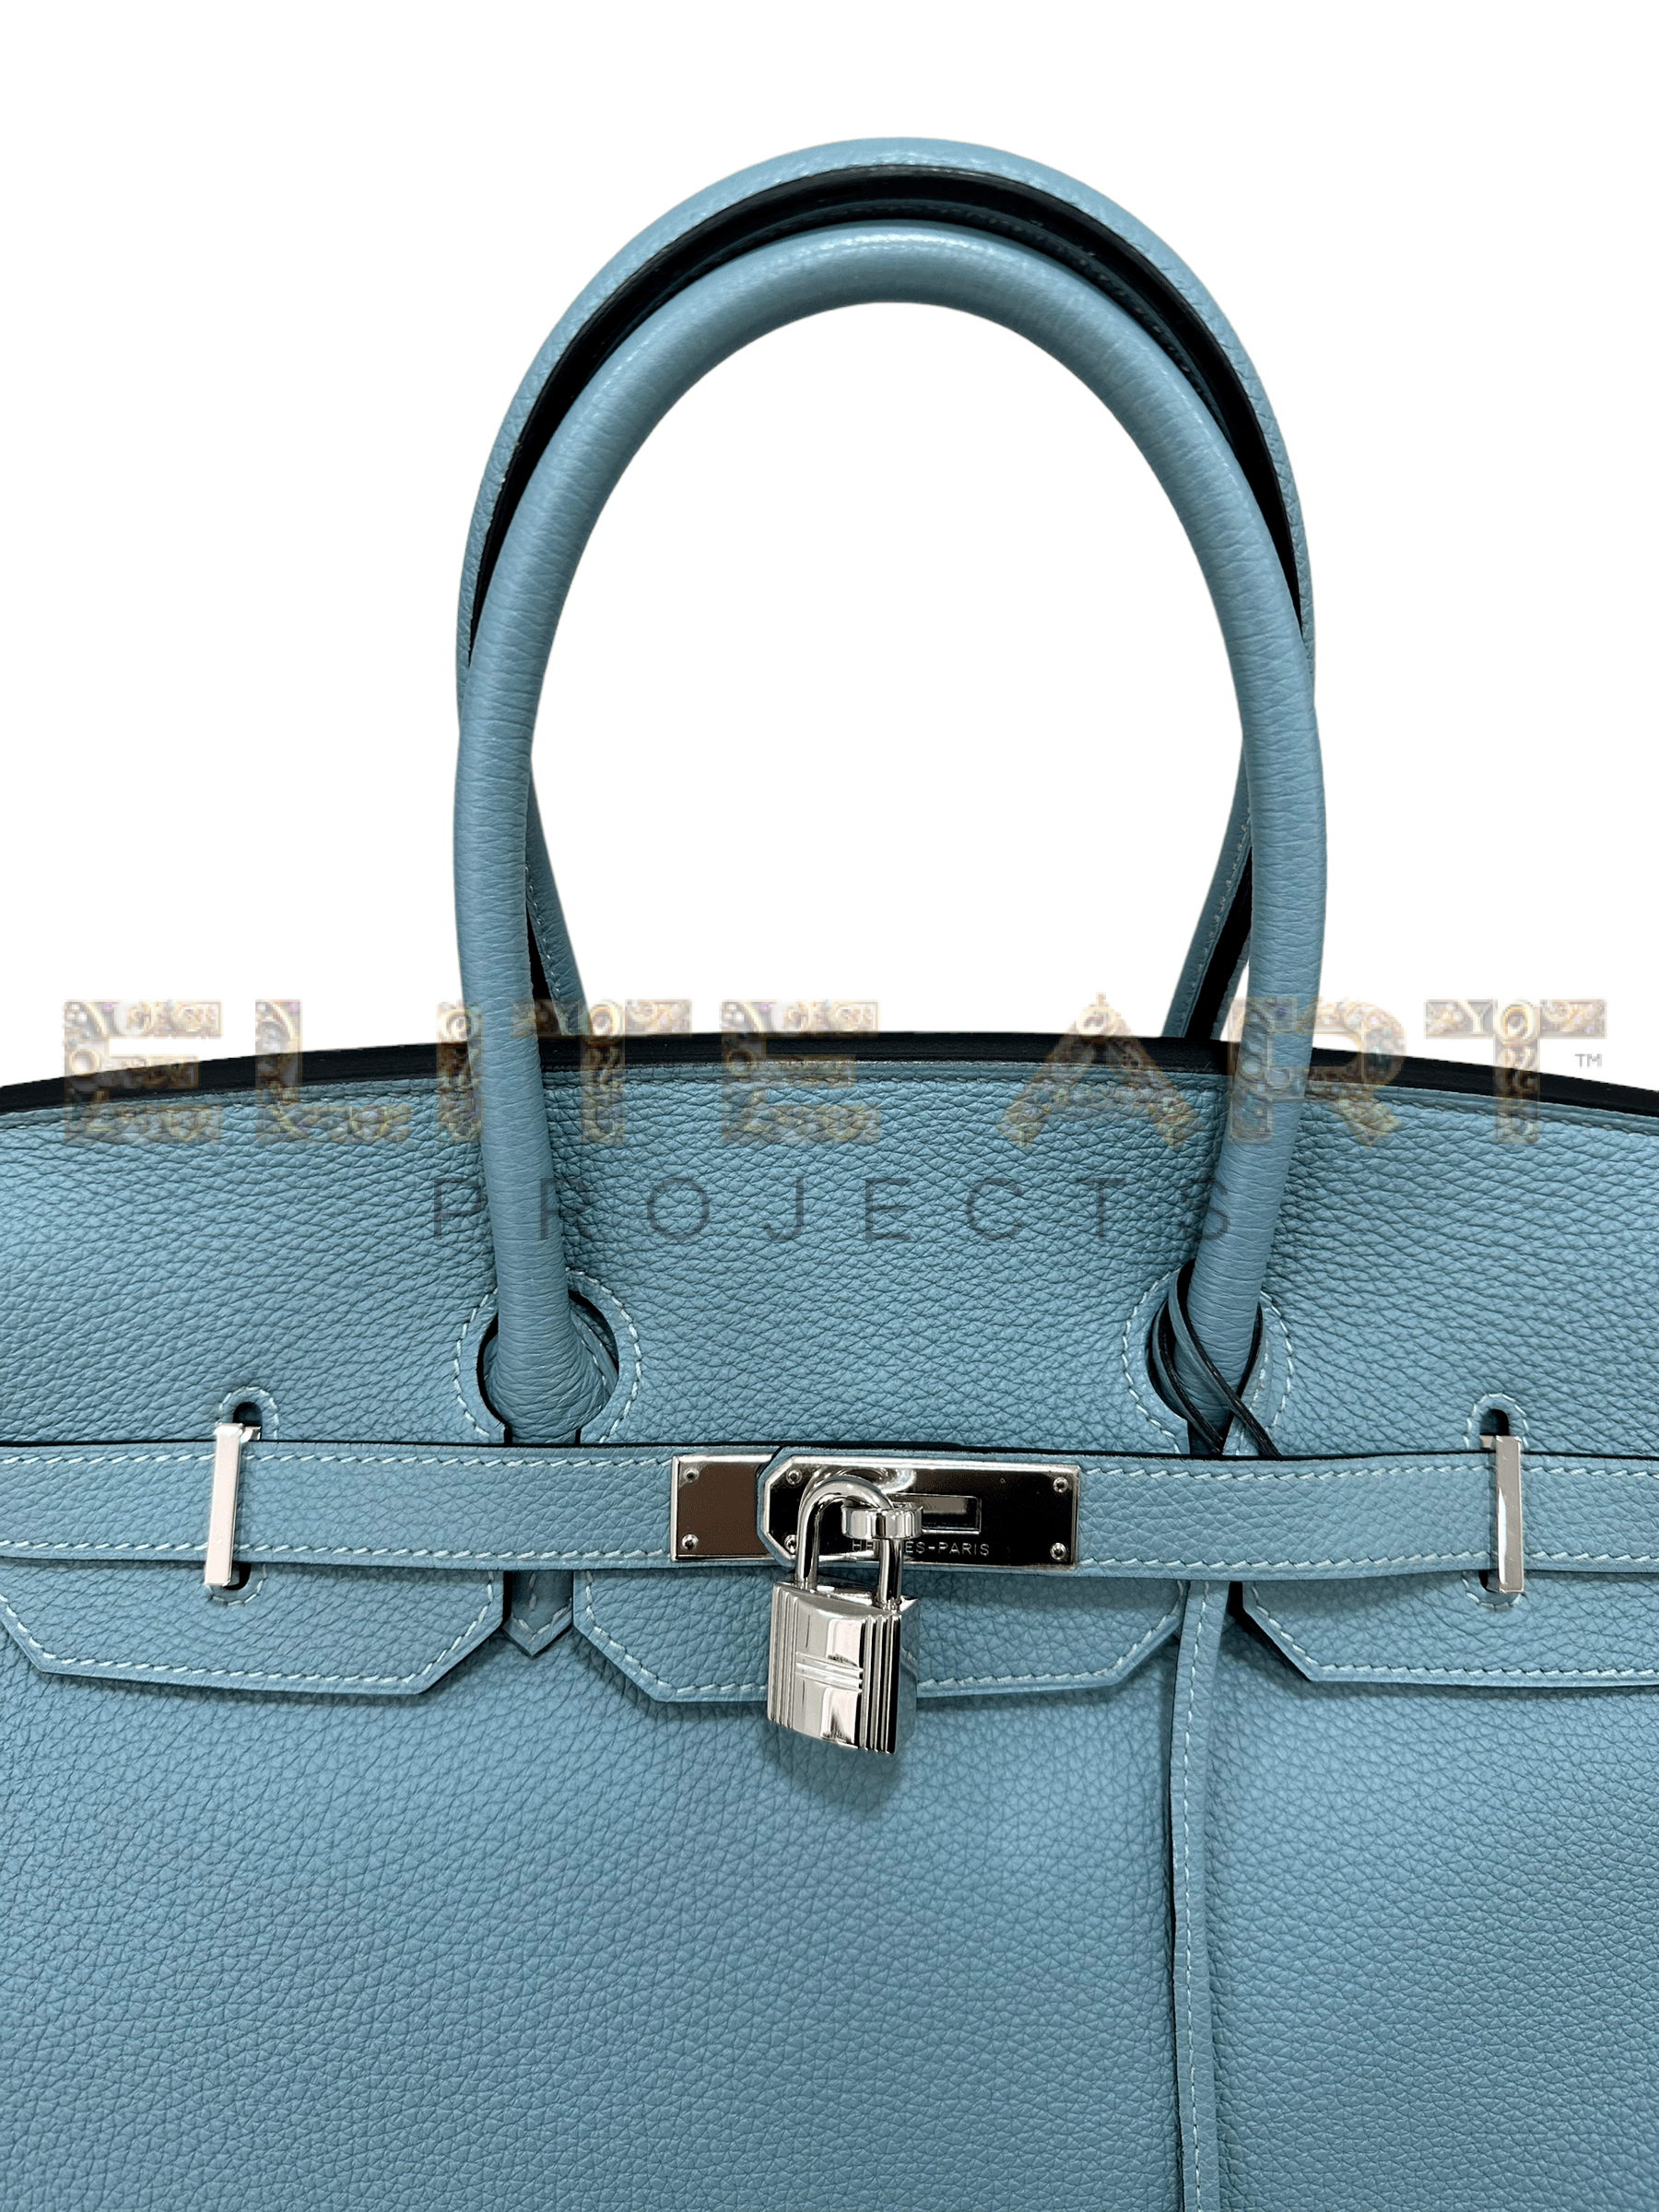 Sky Blue, Hermès, Birkin, Togo Leather